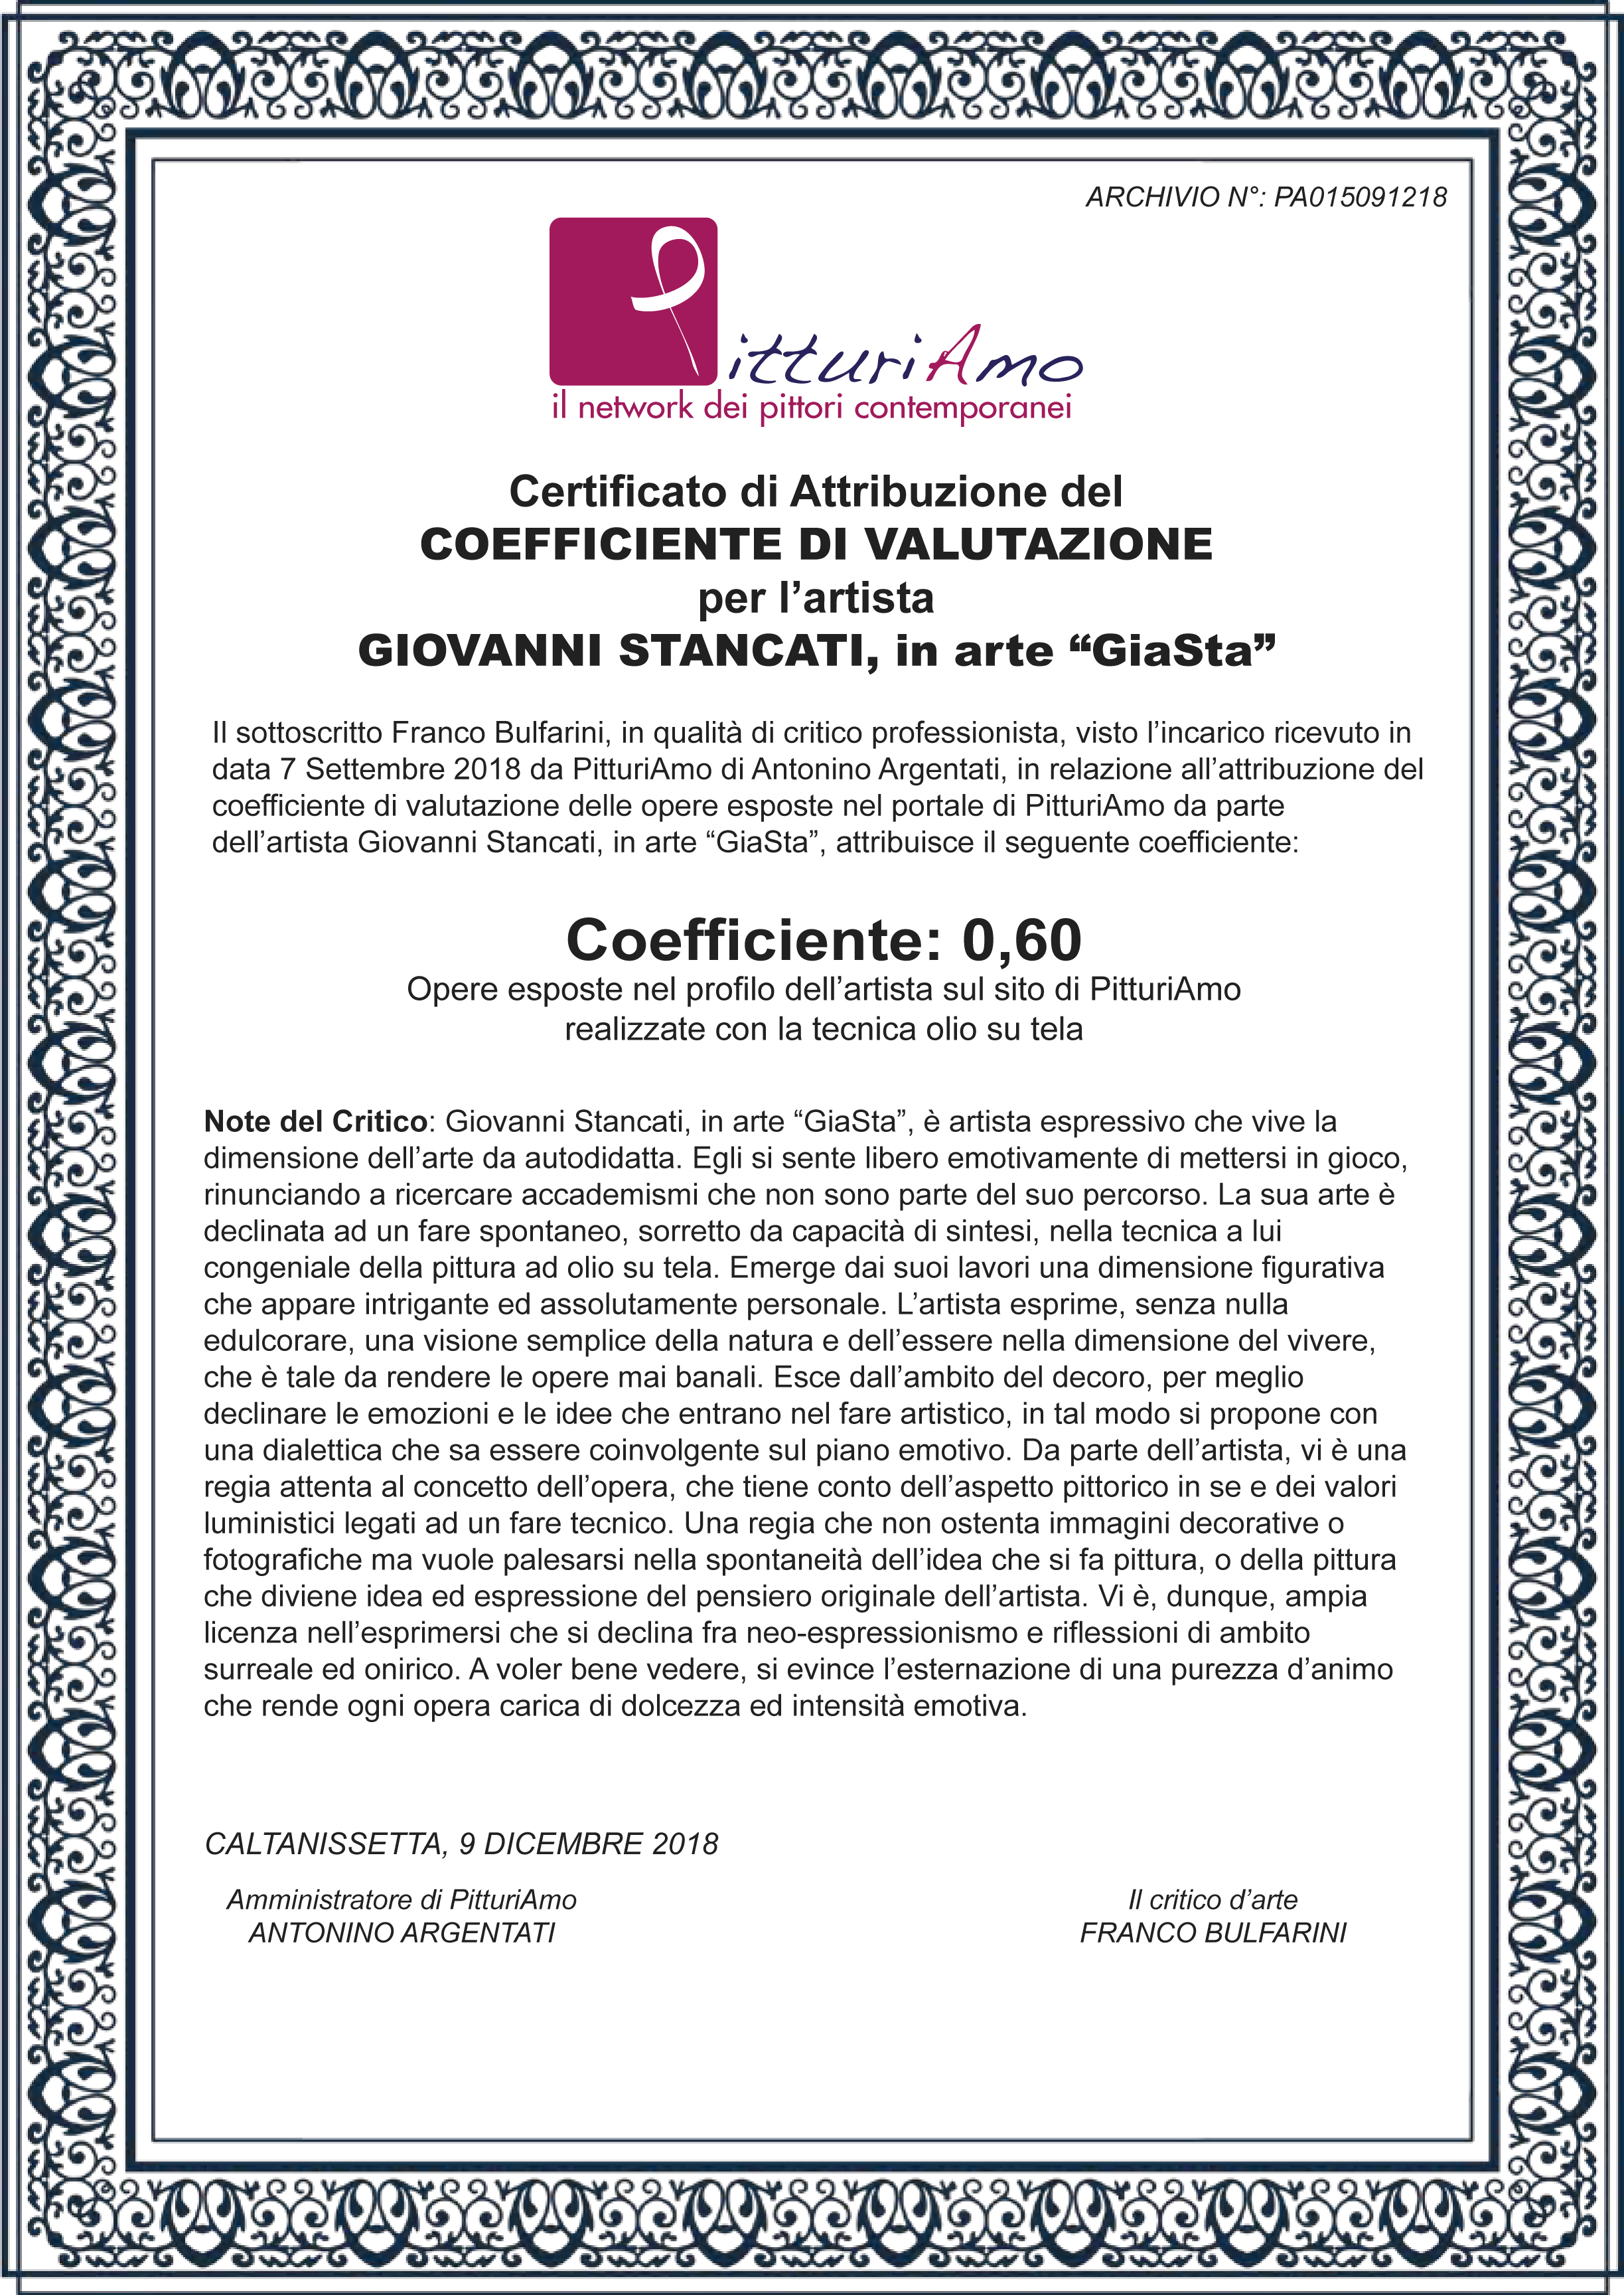 Coefficiente artistico di Giovanni Stancati, in arte "GiaSta"